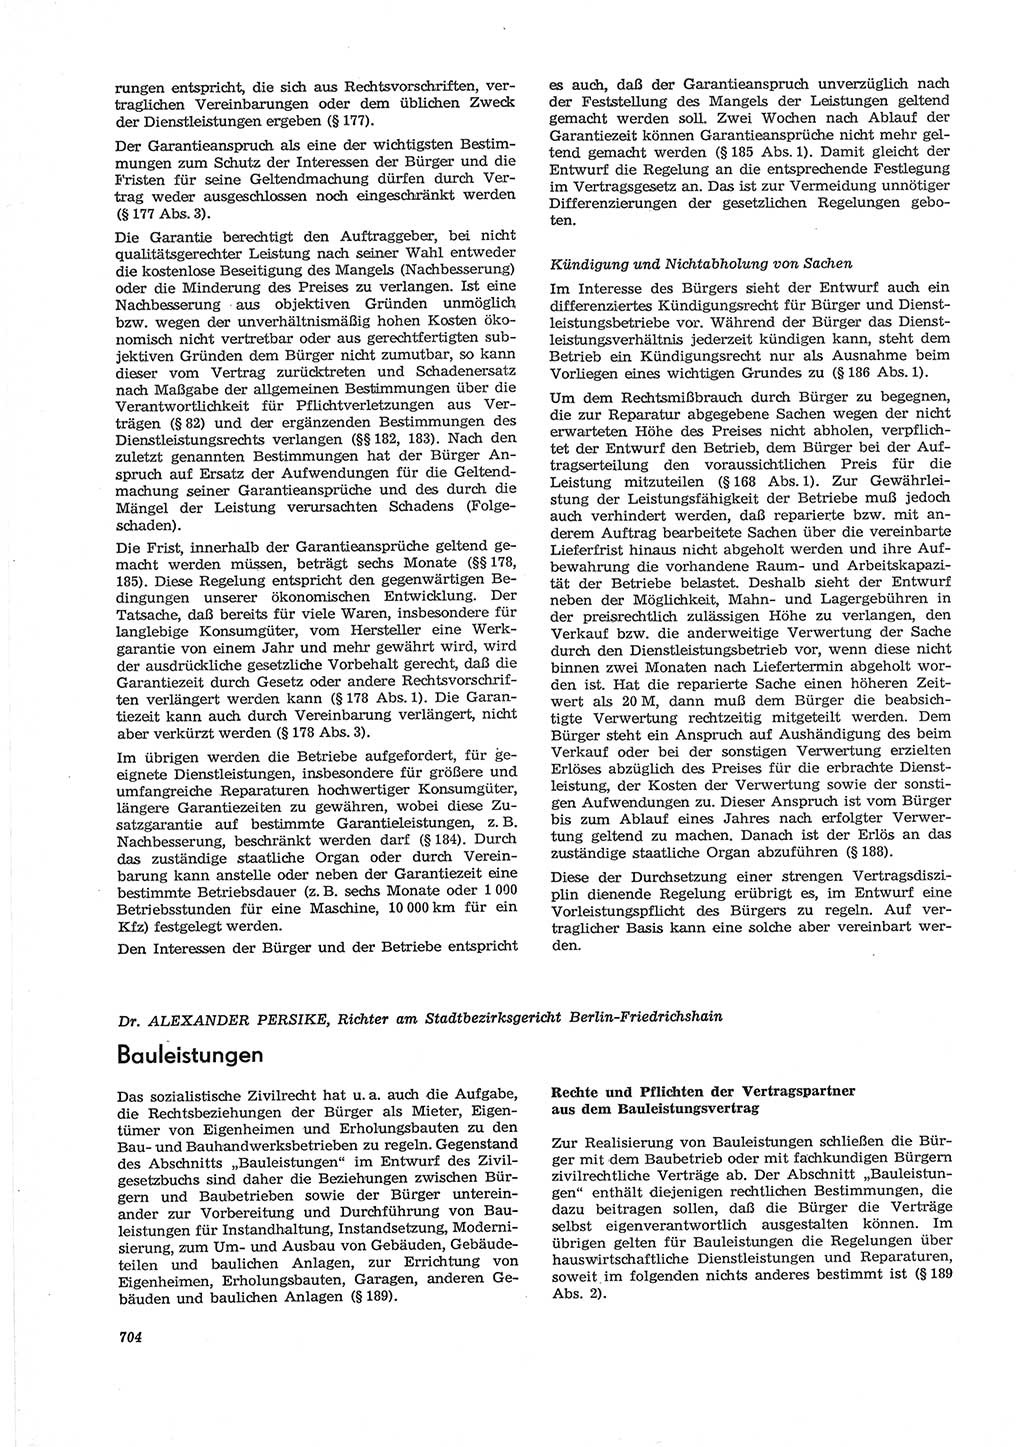 Neue Justiz (NJ), Zeitschrift für Recht und Rechtswissenschaft [Deutsche Demokratische Republik (DDR)], 28. Jahrgang 1974, Seite 704 (NJ DDR 1974, S. 704)